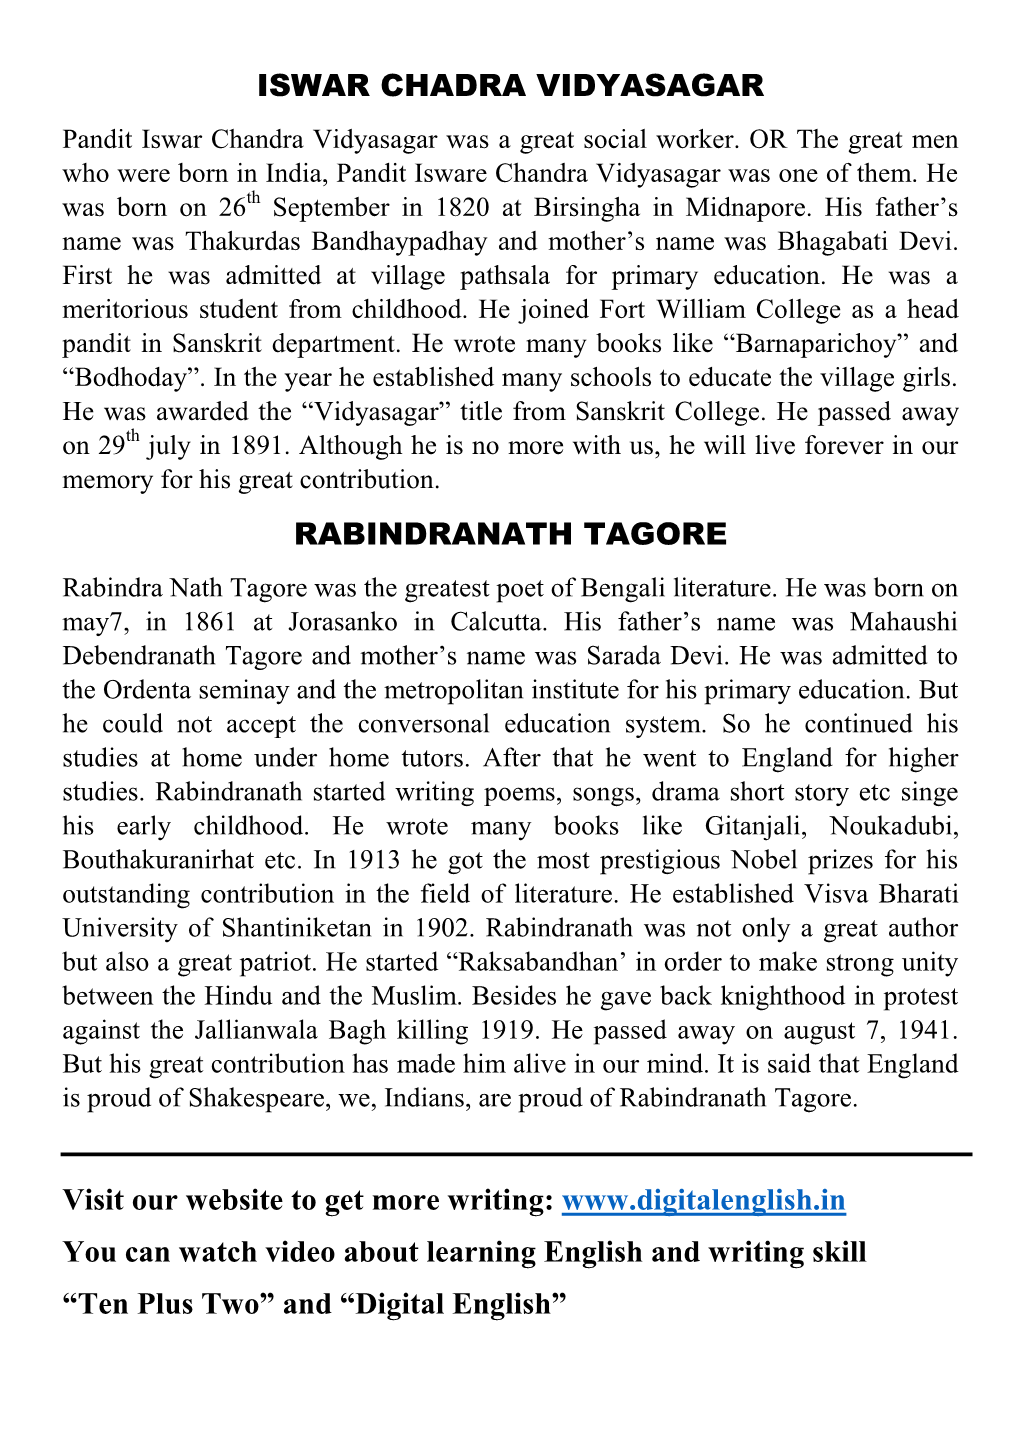 ISWAR CHADRA VIDYASAGAR RABINDRANATH TAGORE Visit Our Website to Get More Writing